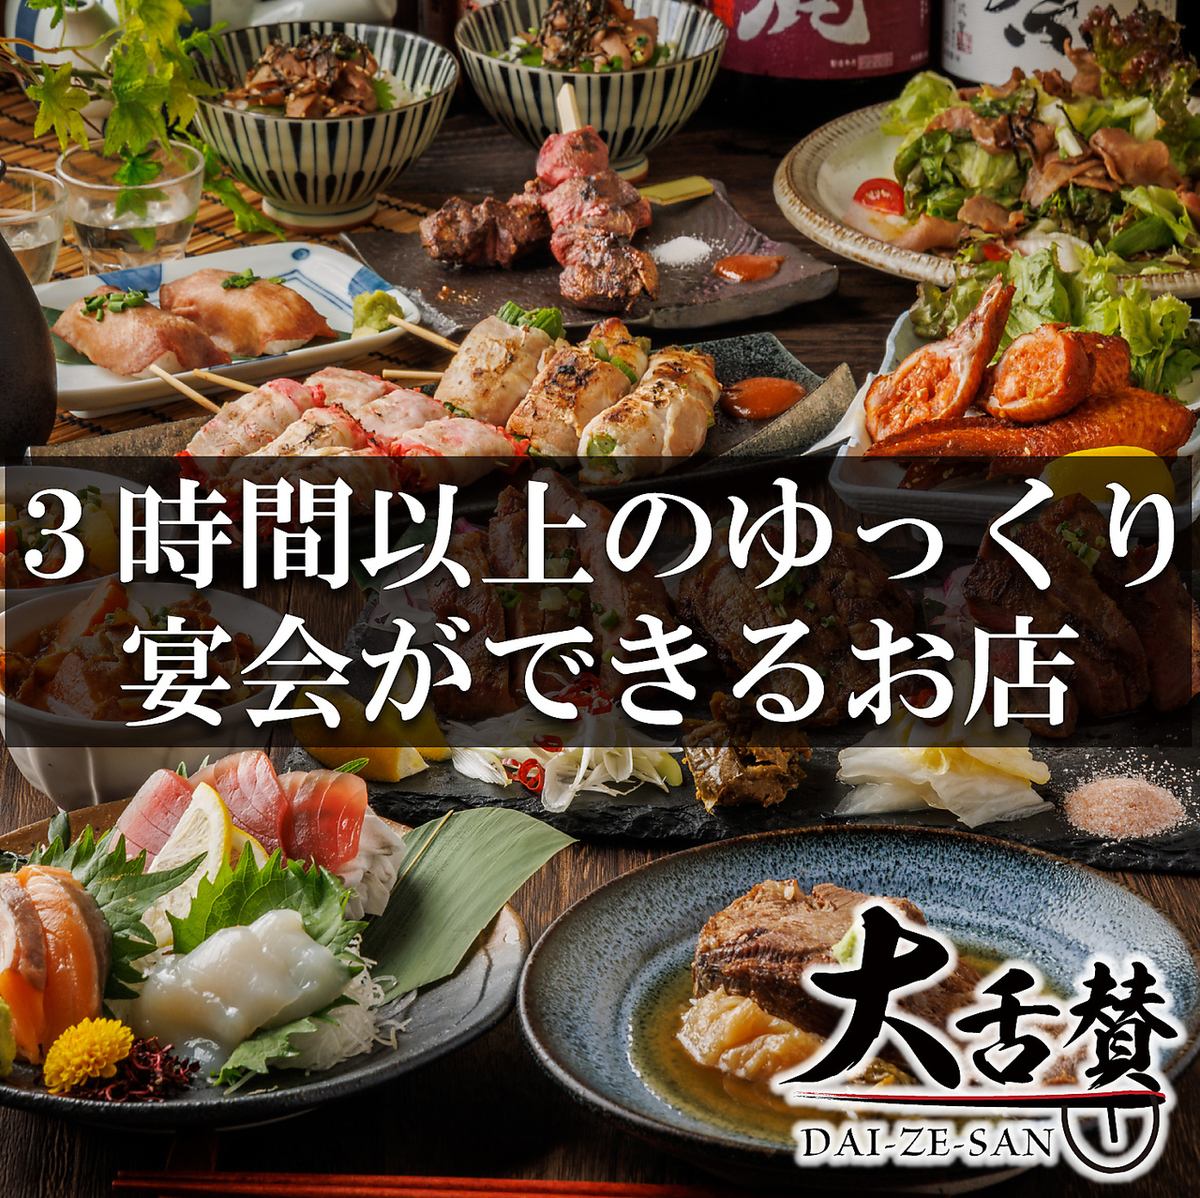 無限暢飲3,480日圓（含稅）～!!還有多種豪華套餐！